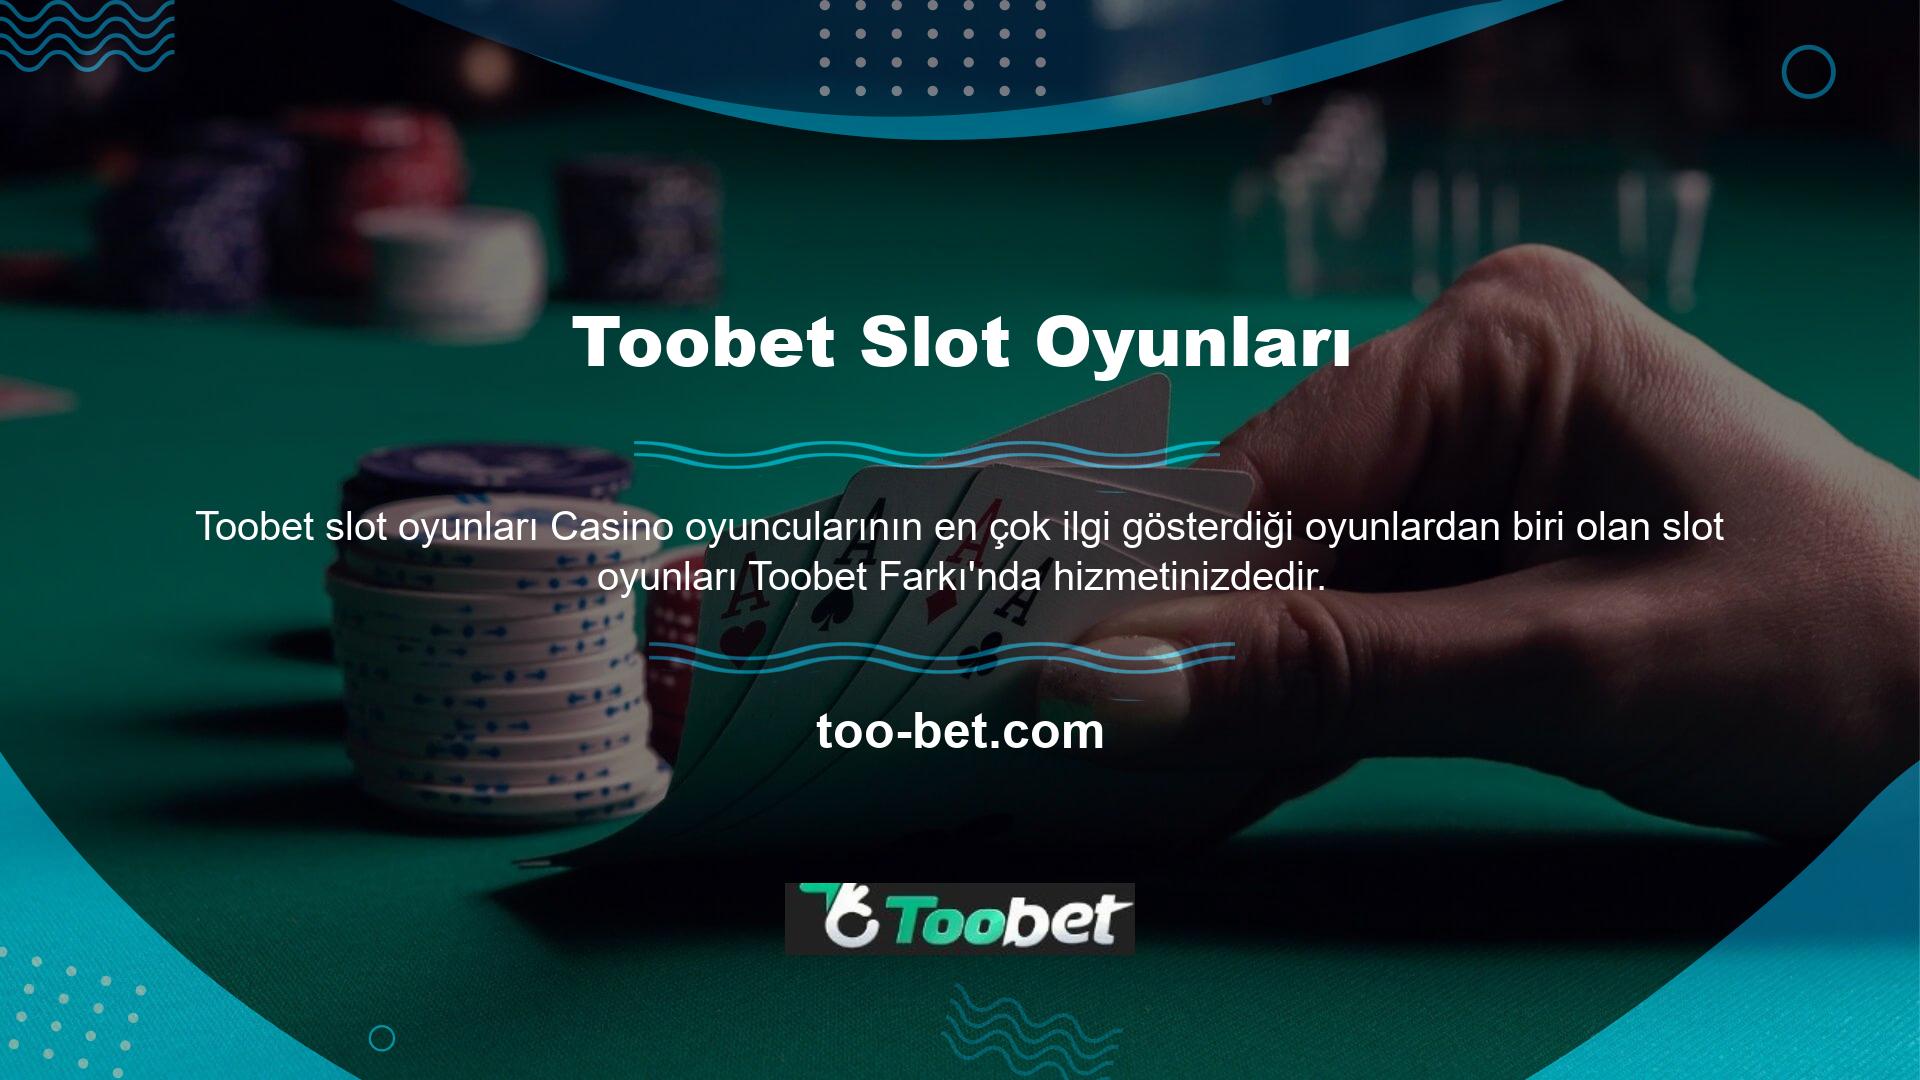 Türkiye sınırları içinde ikamet eden casino severler artık ülkenin casino salonlarına gidememekte, casino tutkularını online bahis siteleri aracılığıyla tatmin edebilmektedir